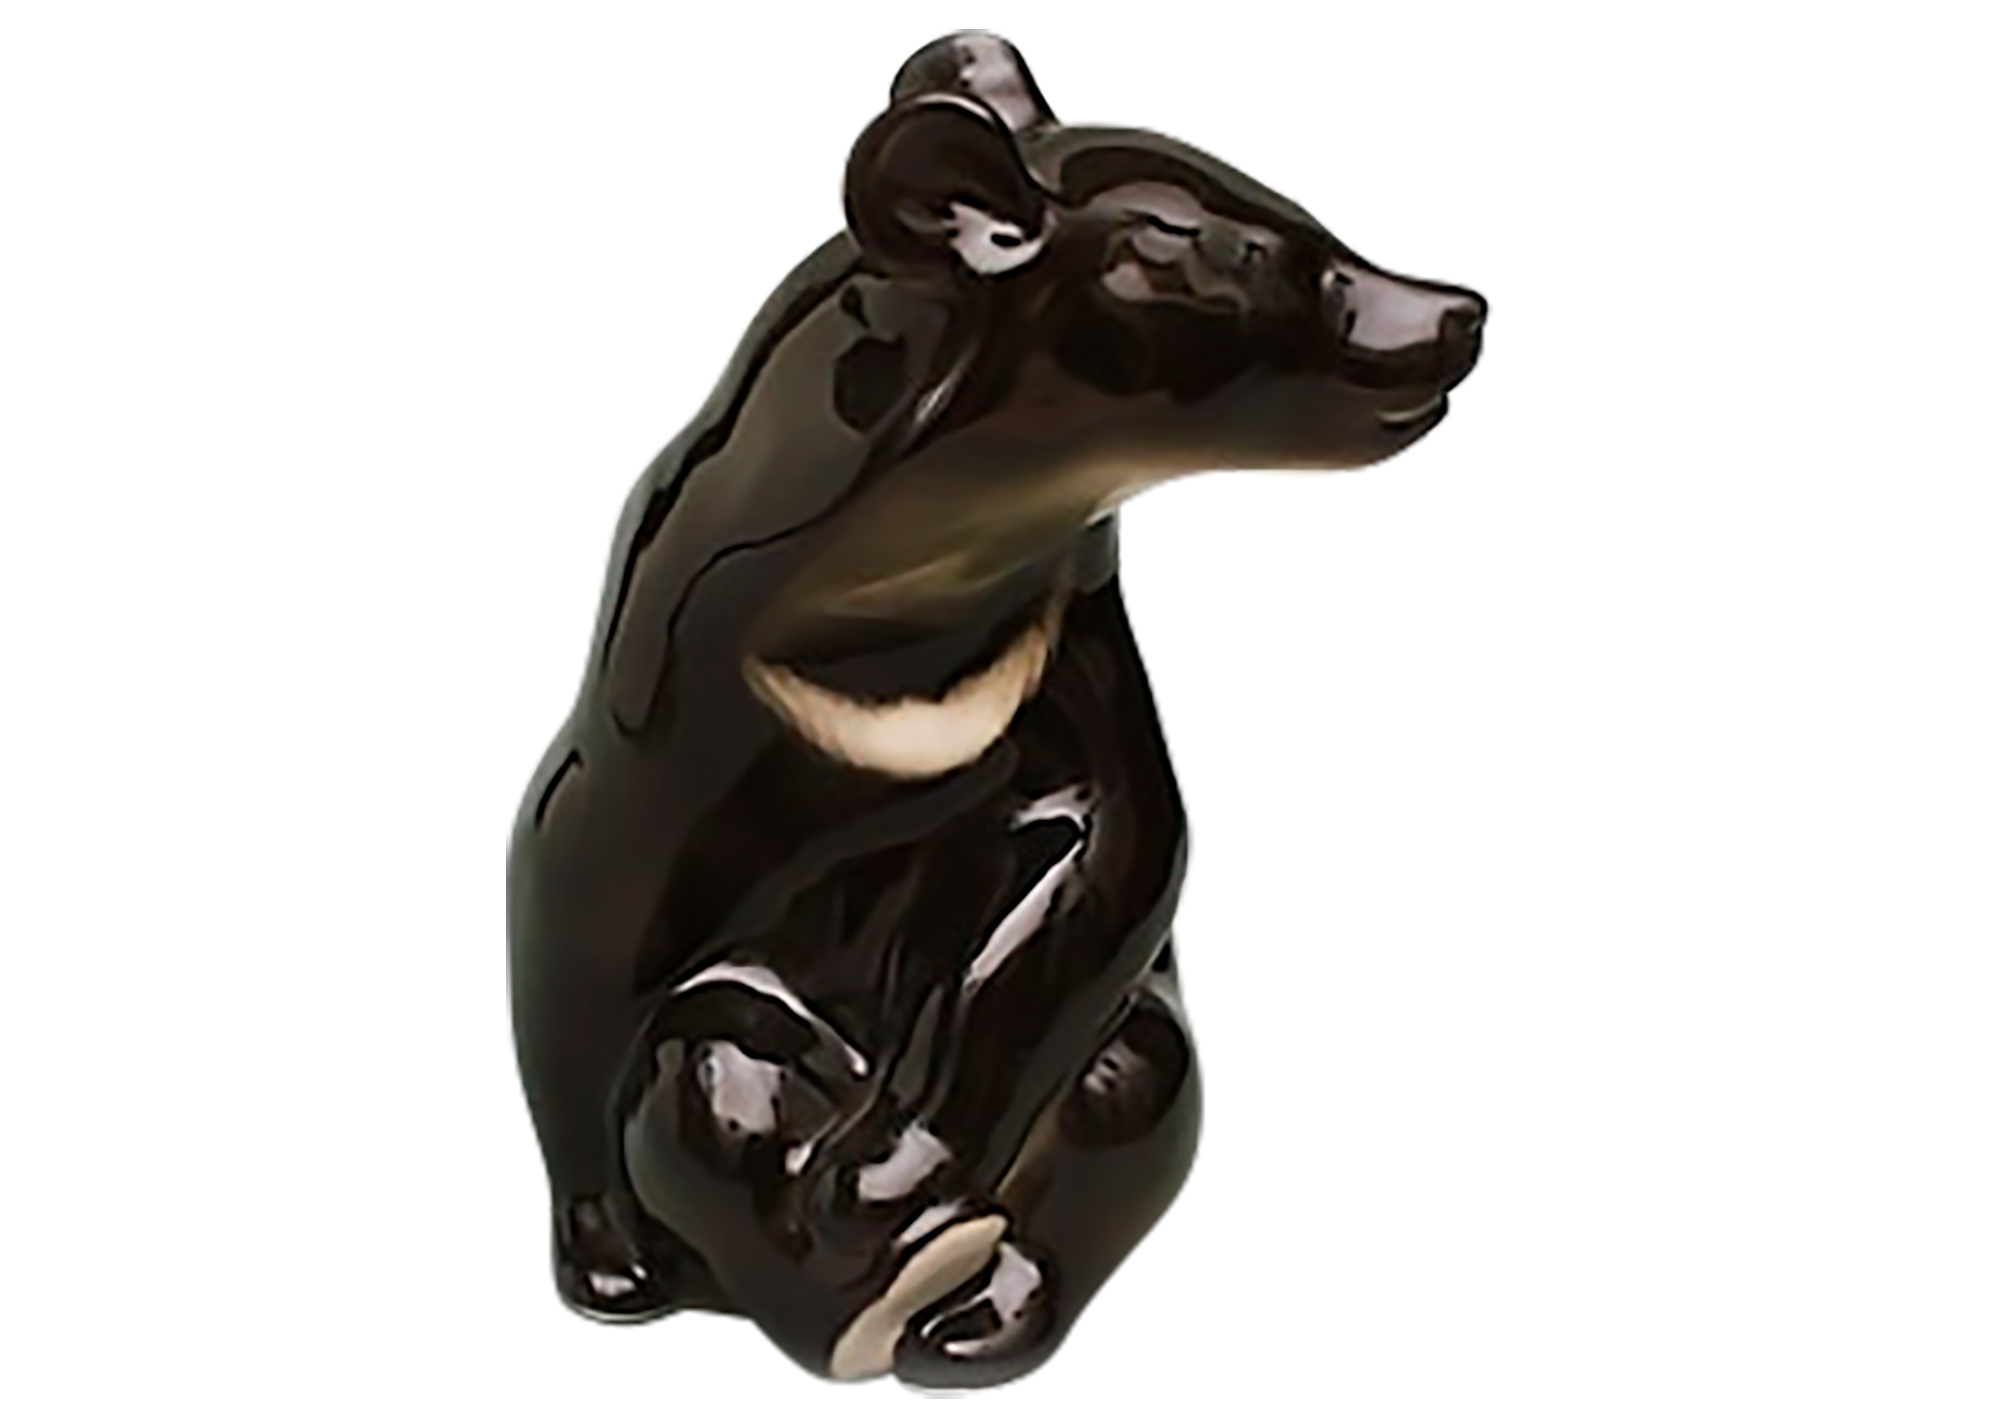 Buy Himalayan Bear Figurine at GoldenCockerel.com